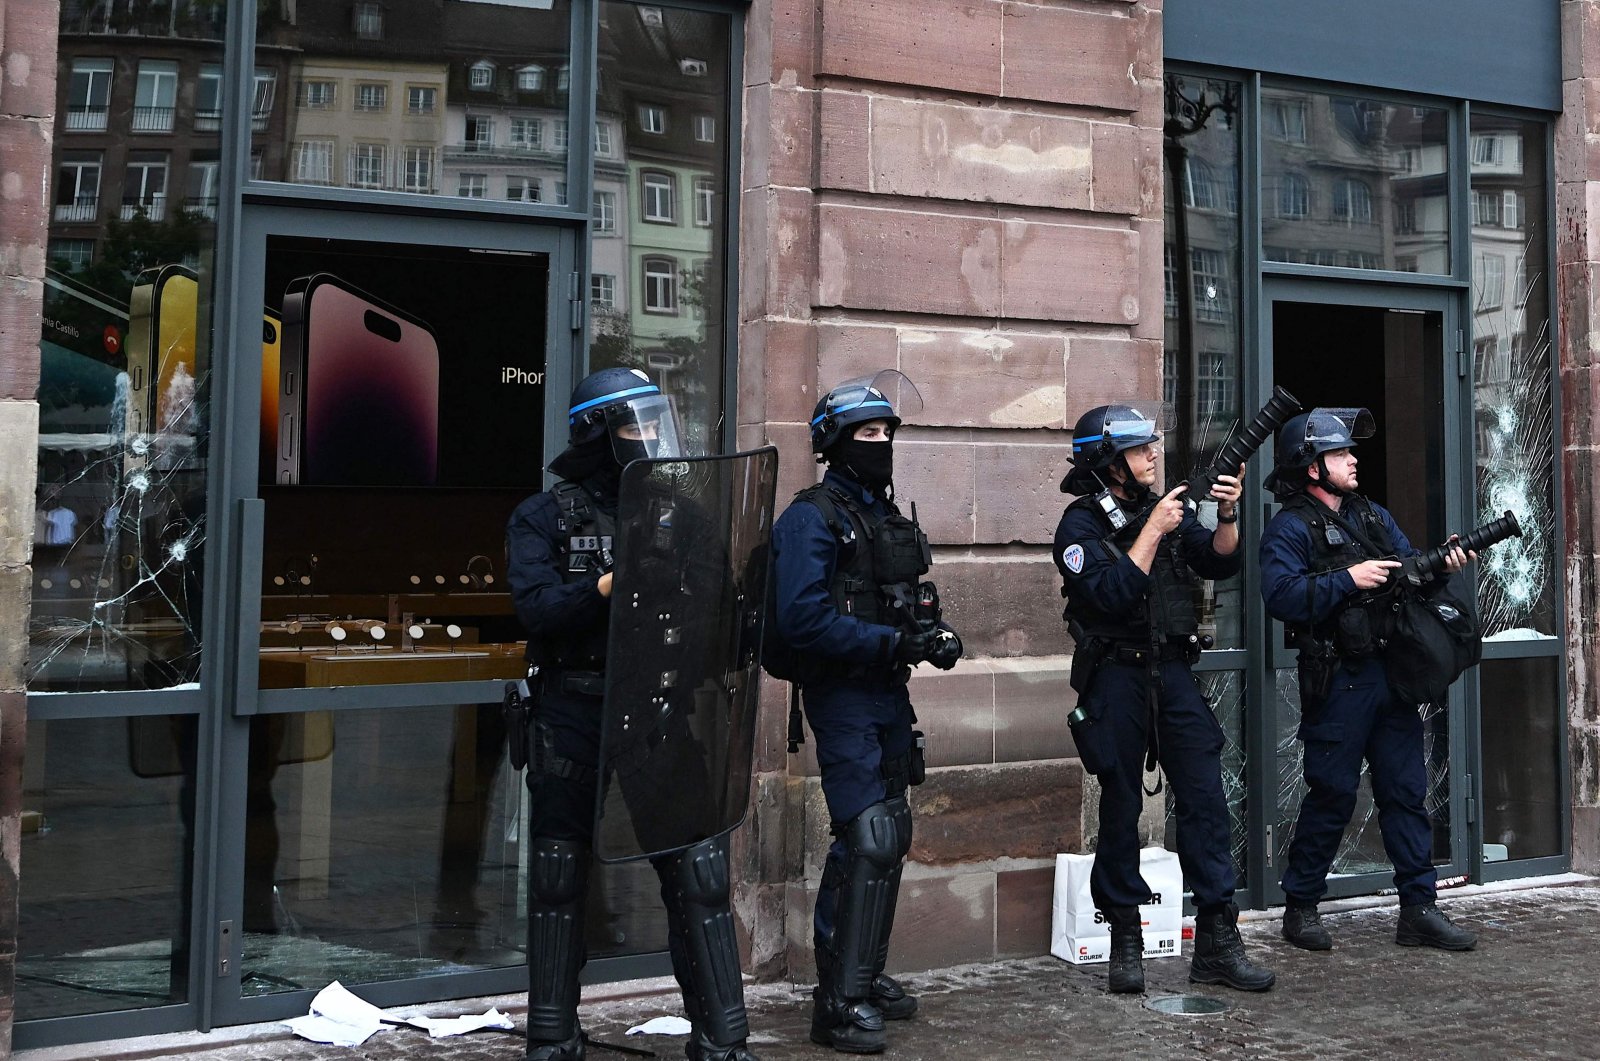 Prancis akan mengerahkan 45.000 pasukan keamanan untuk memadamkan protes, kekerasan